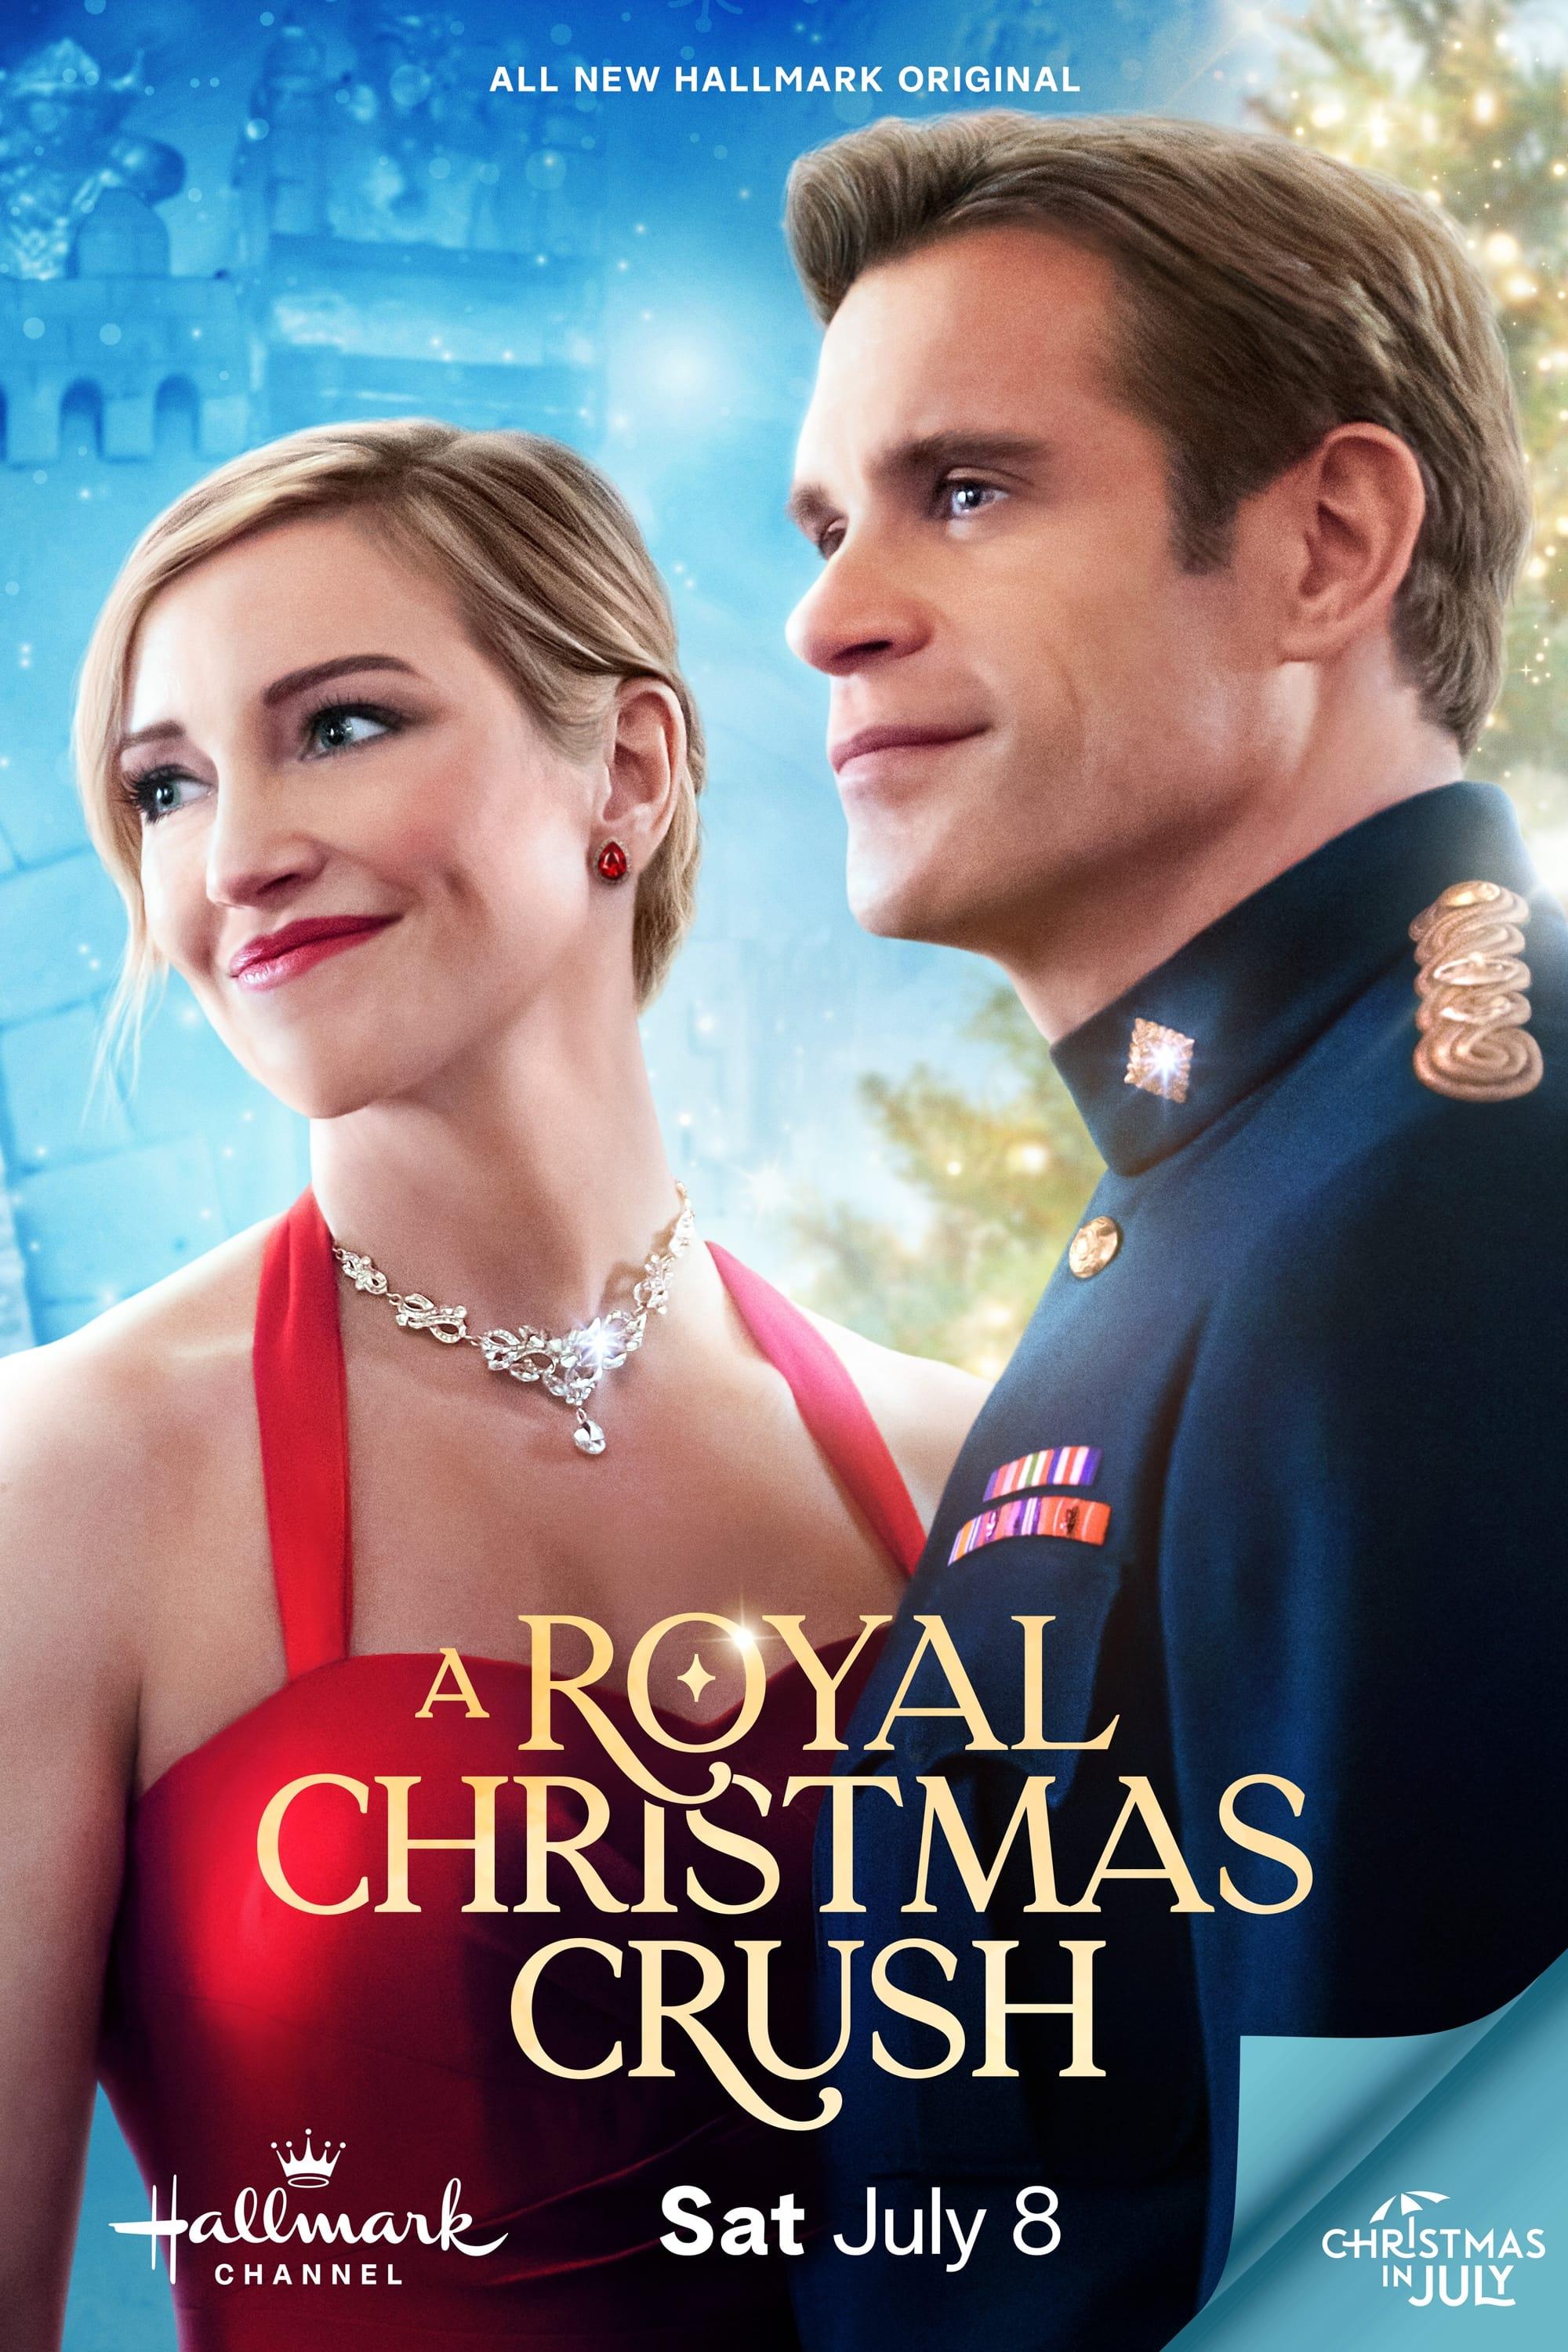 A Royal Christmas Crush poster